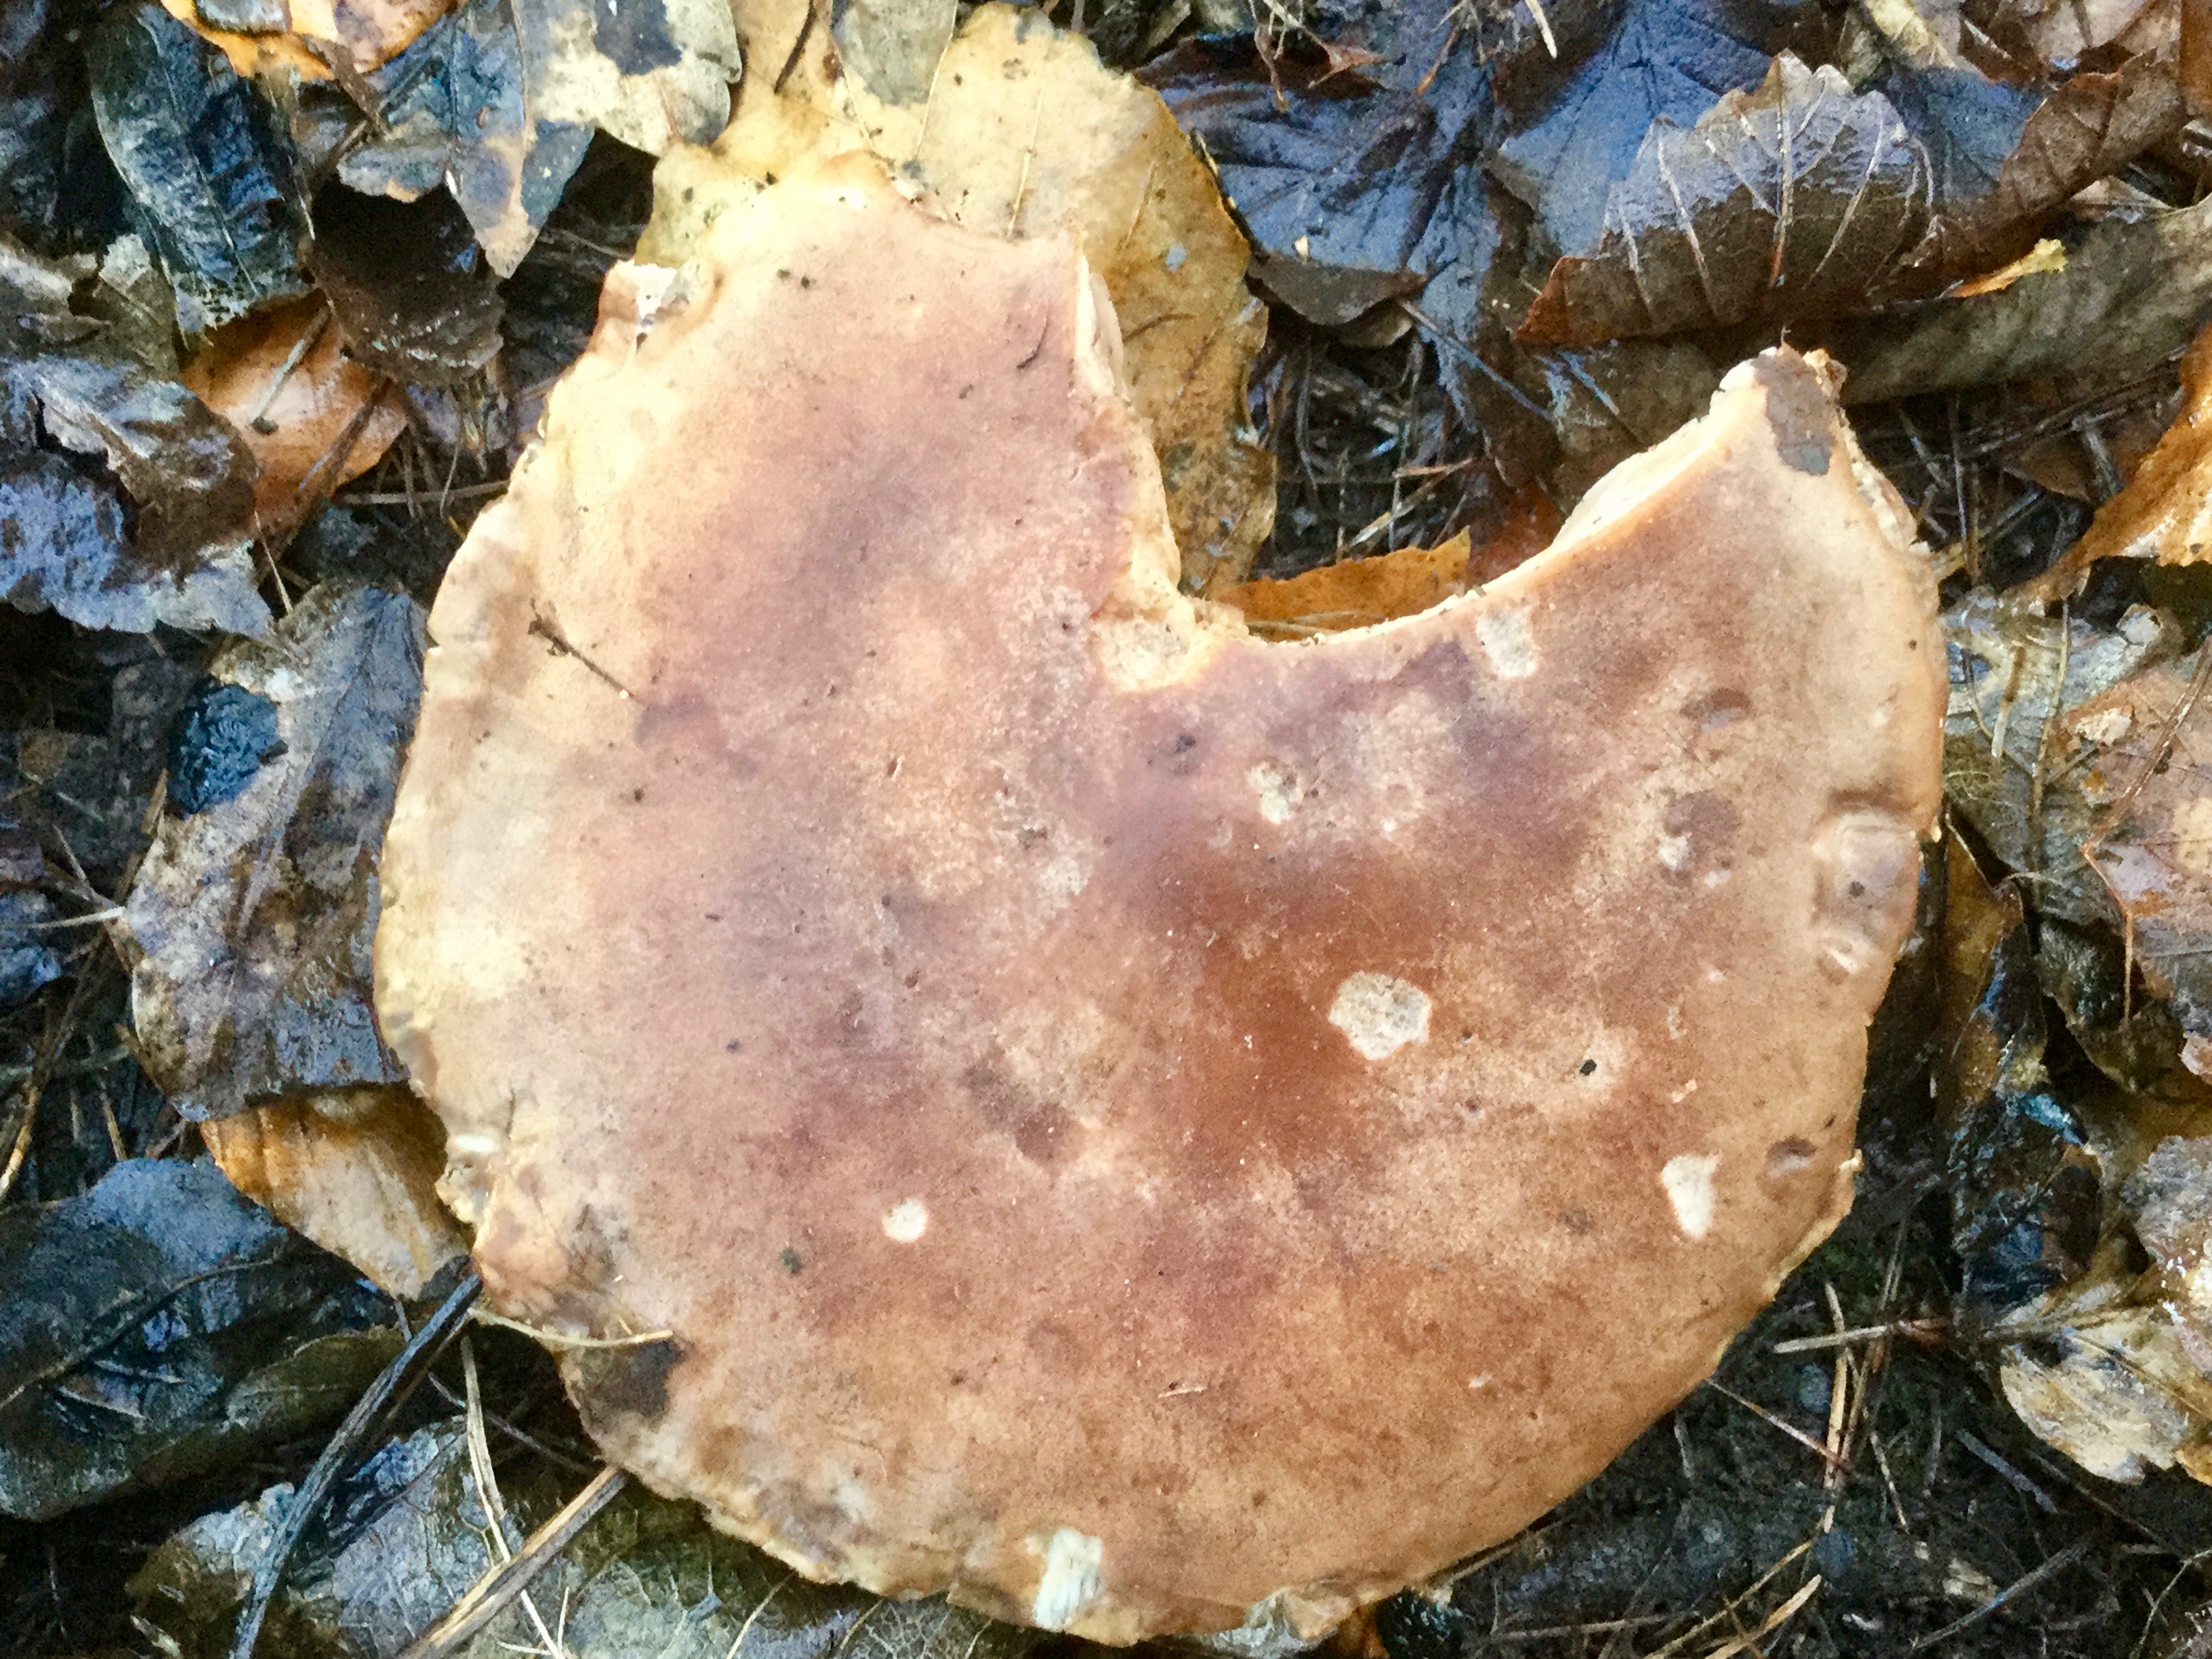 Mortonhall Fungi - 2 Feb 2020 - Photo 49